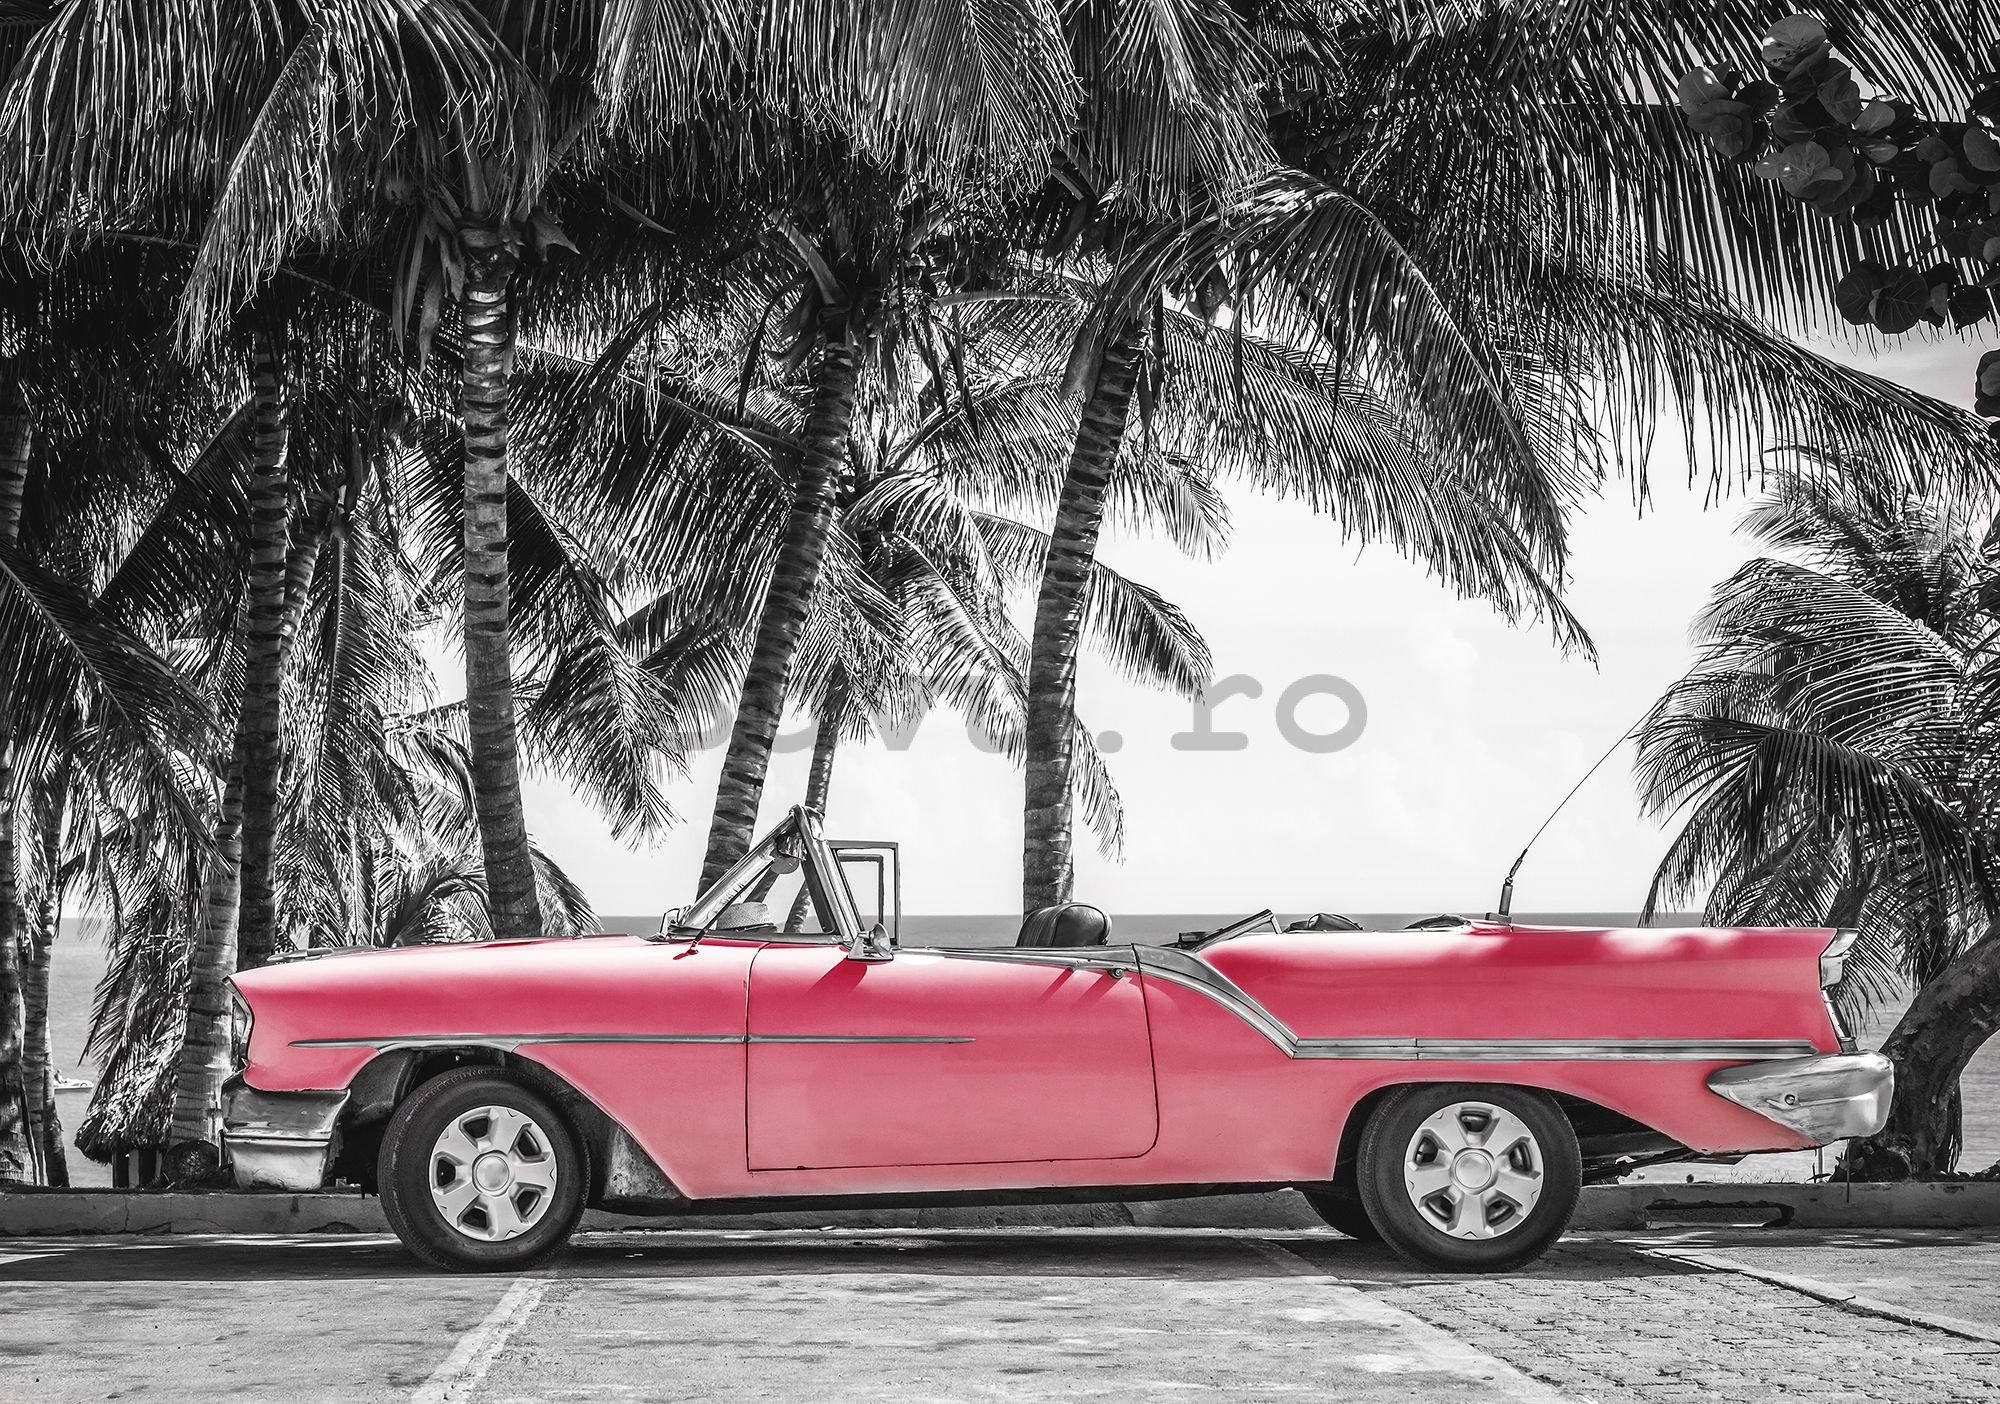 Fototapet: Masina rosie Cuba - 184x254 cm